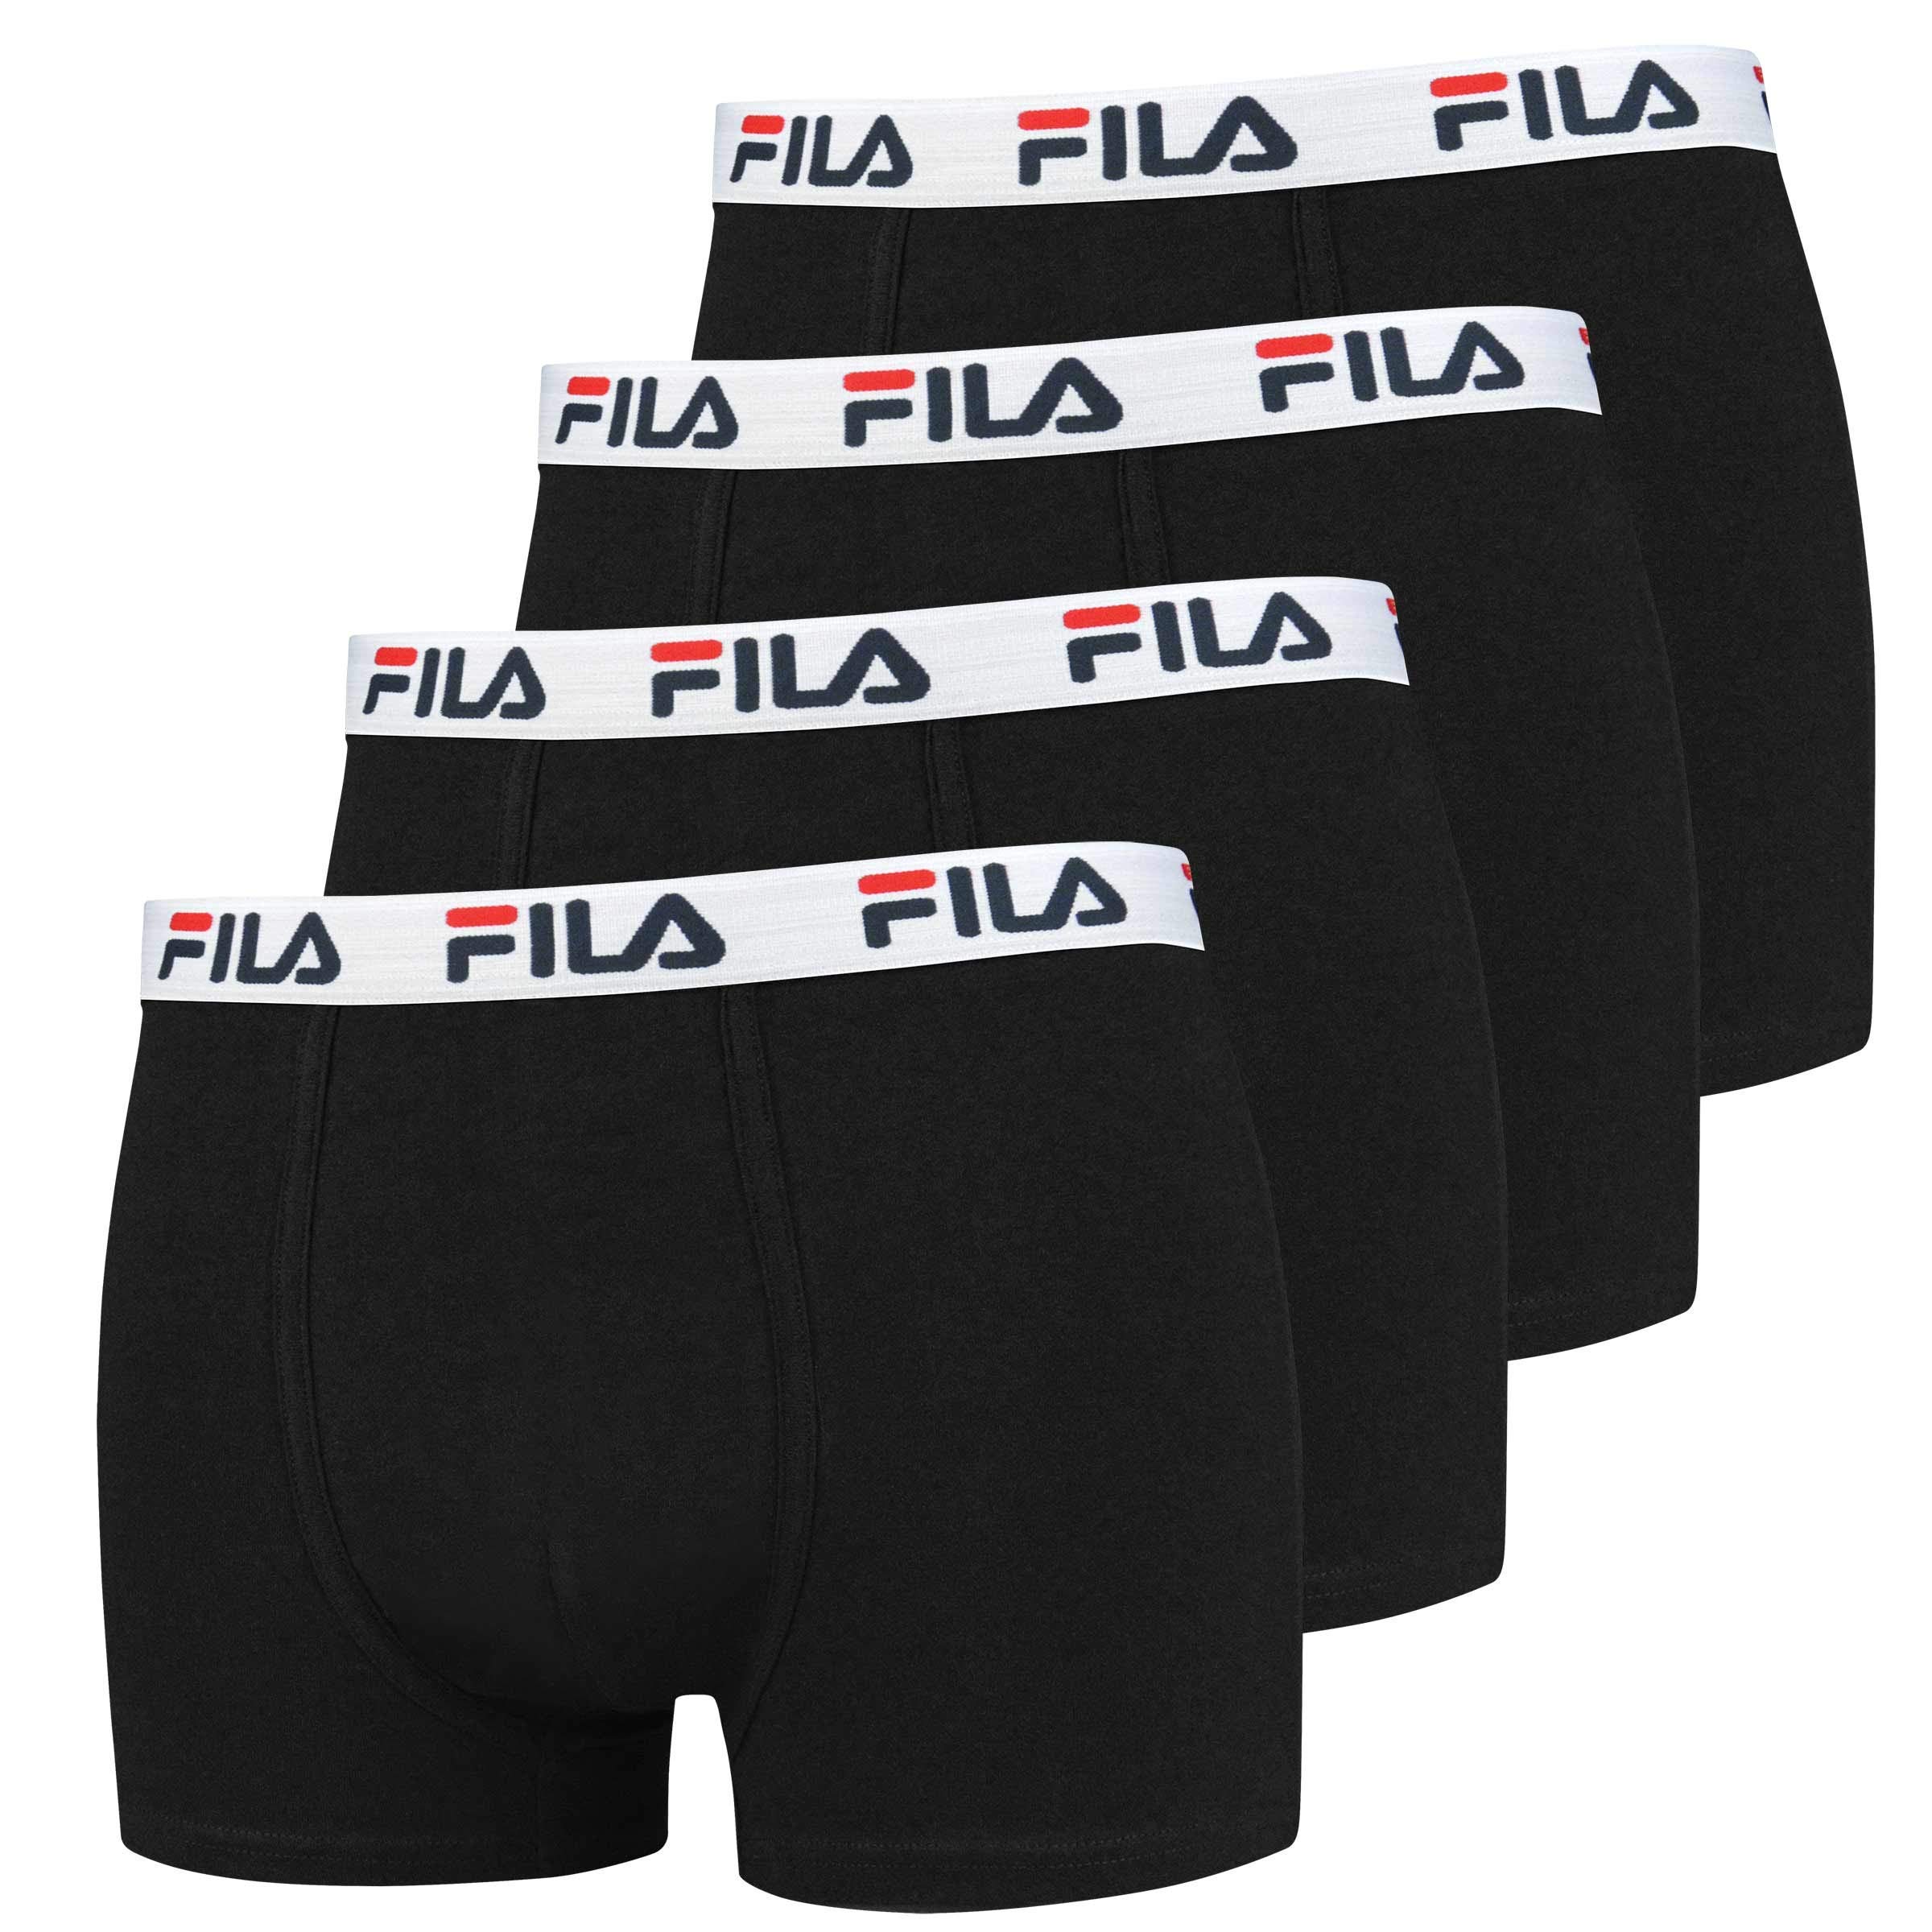 FILA 4er Vorteilspack Herren Boxershorts - Logo Pants - Einfarbig - viele Farben (Schwarz, XL - 4er Pack)